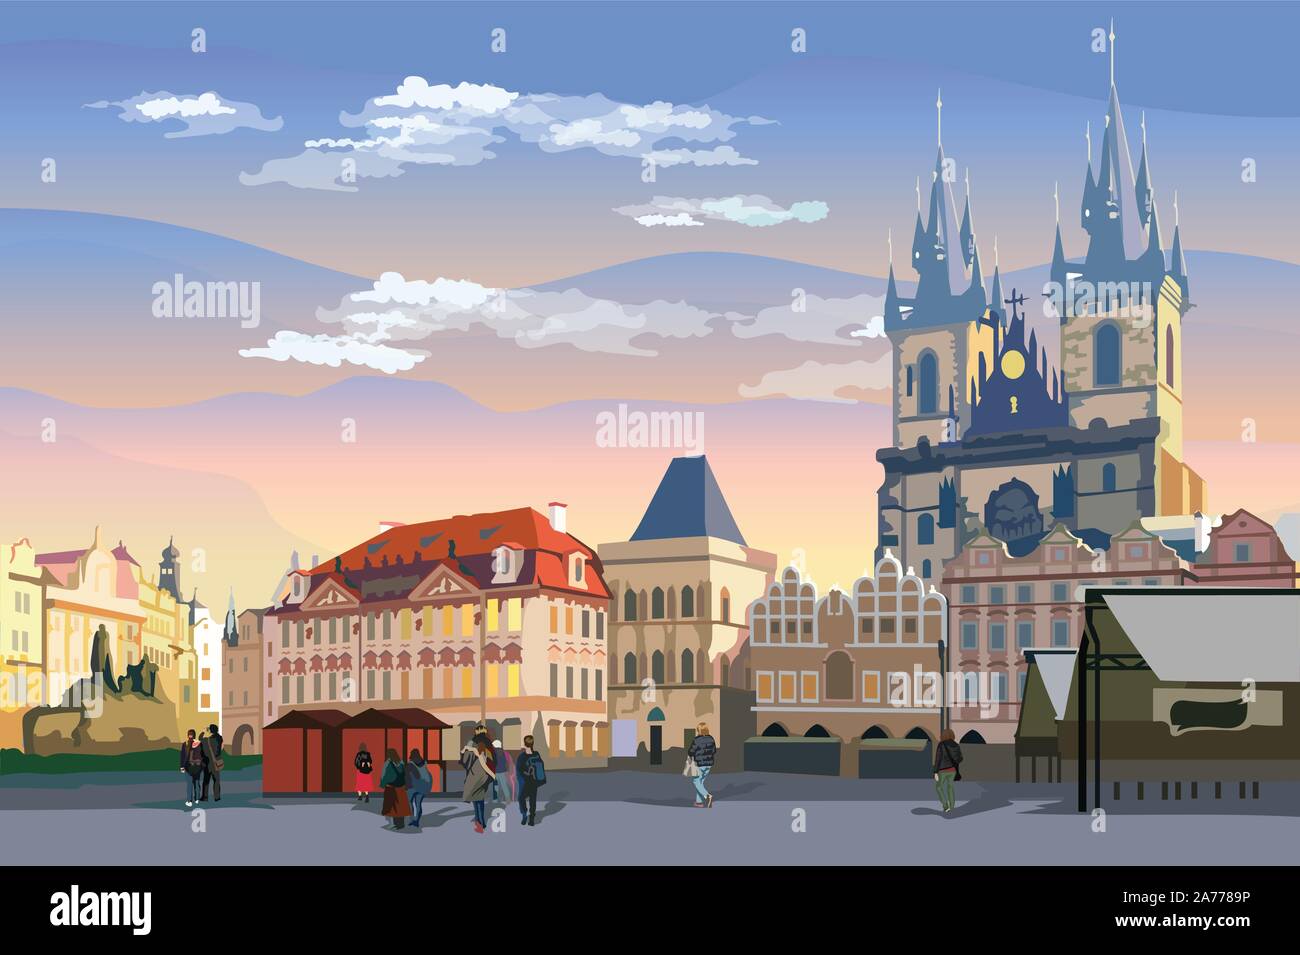 Bunte Vektor-zeichnung Abbildung. Stadtbild der Altstadt und die Teynkirche. Wahrzeichen von Prag, tschechische Republik. Vector Illustration von Landmar Stock Vektor